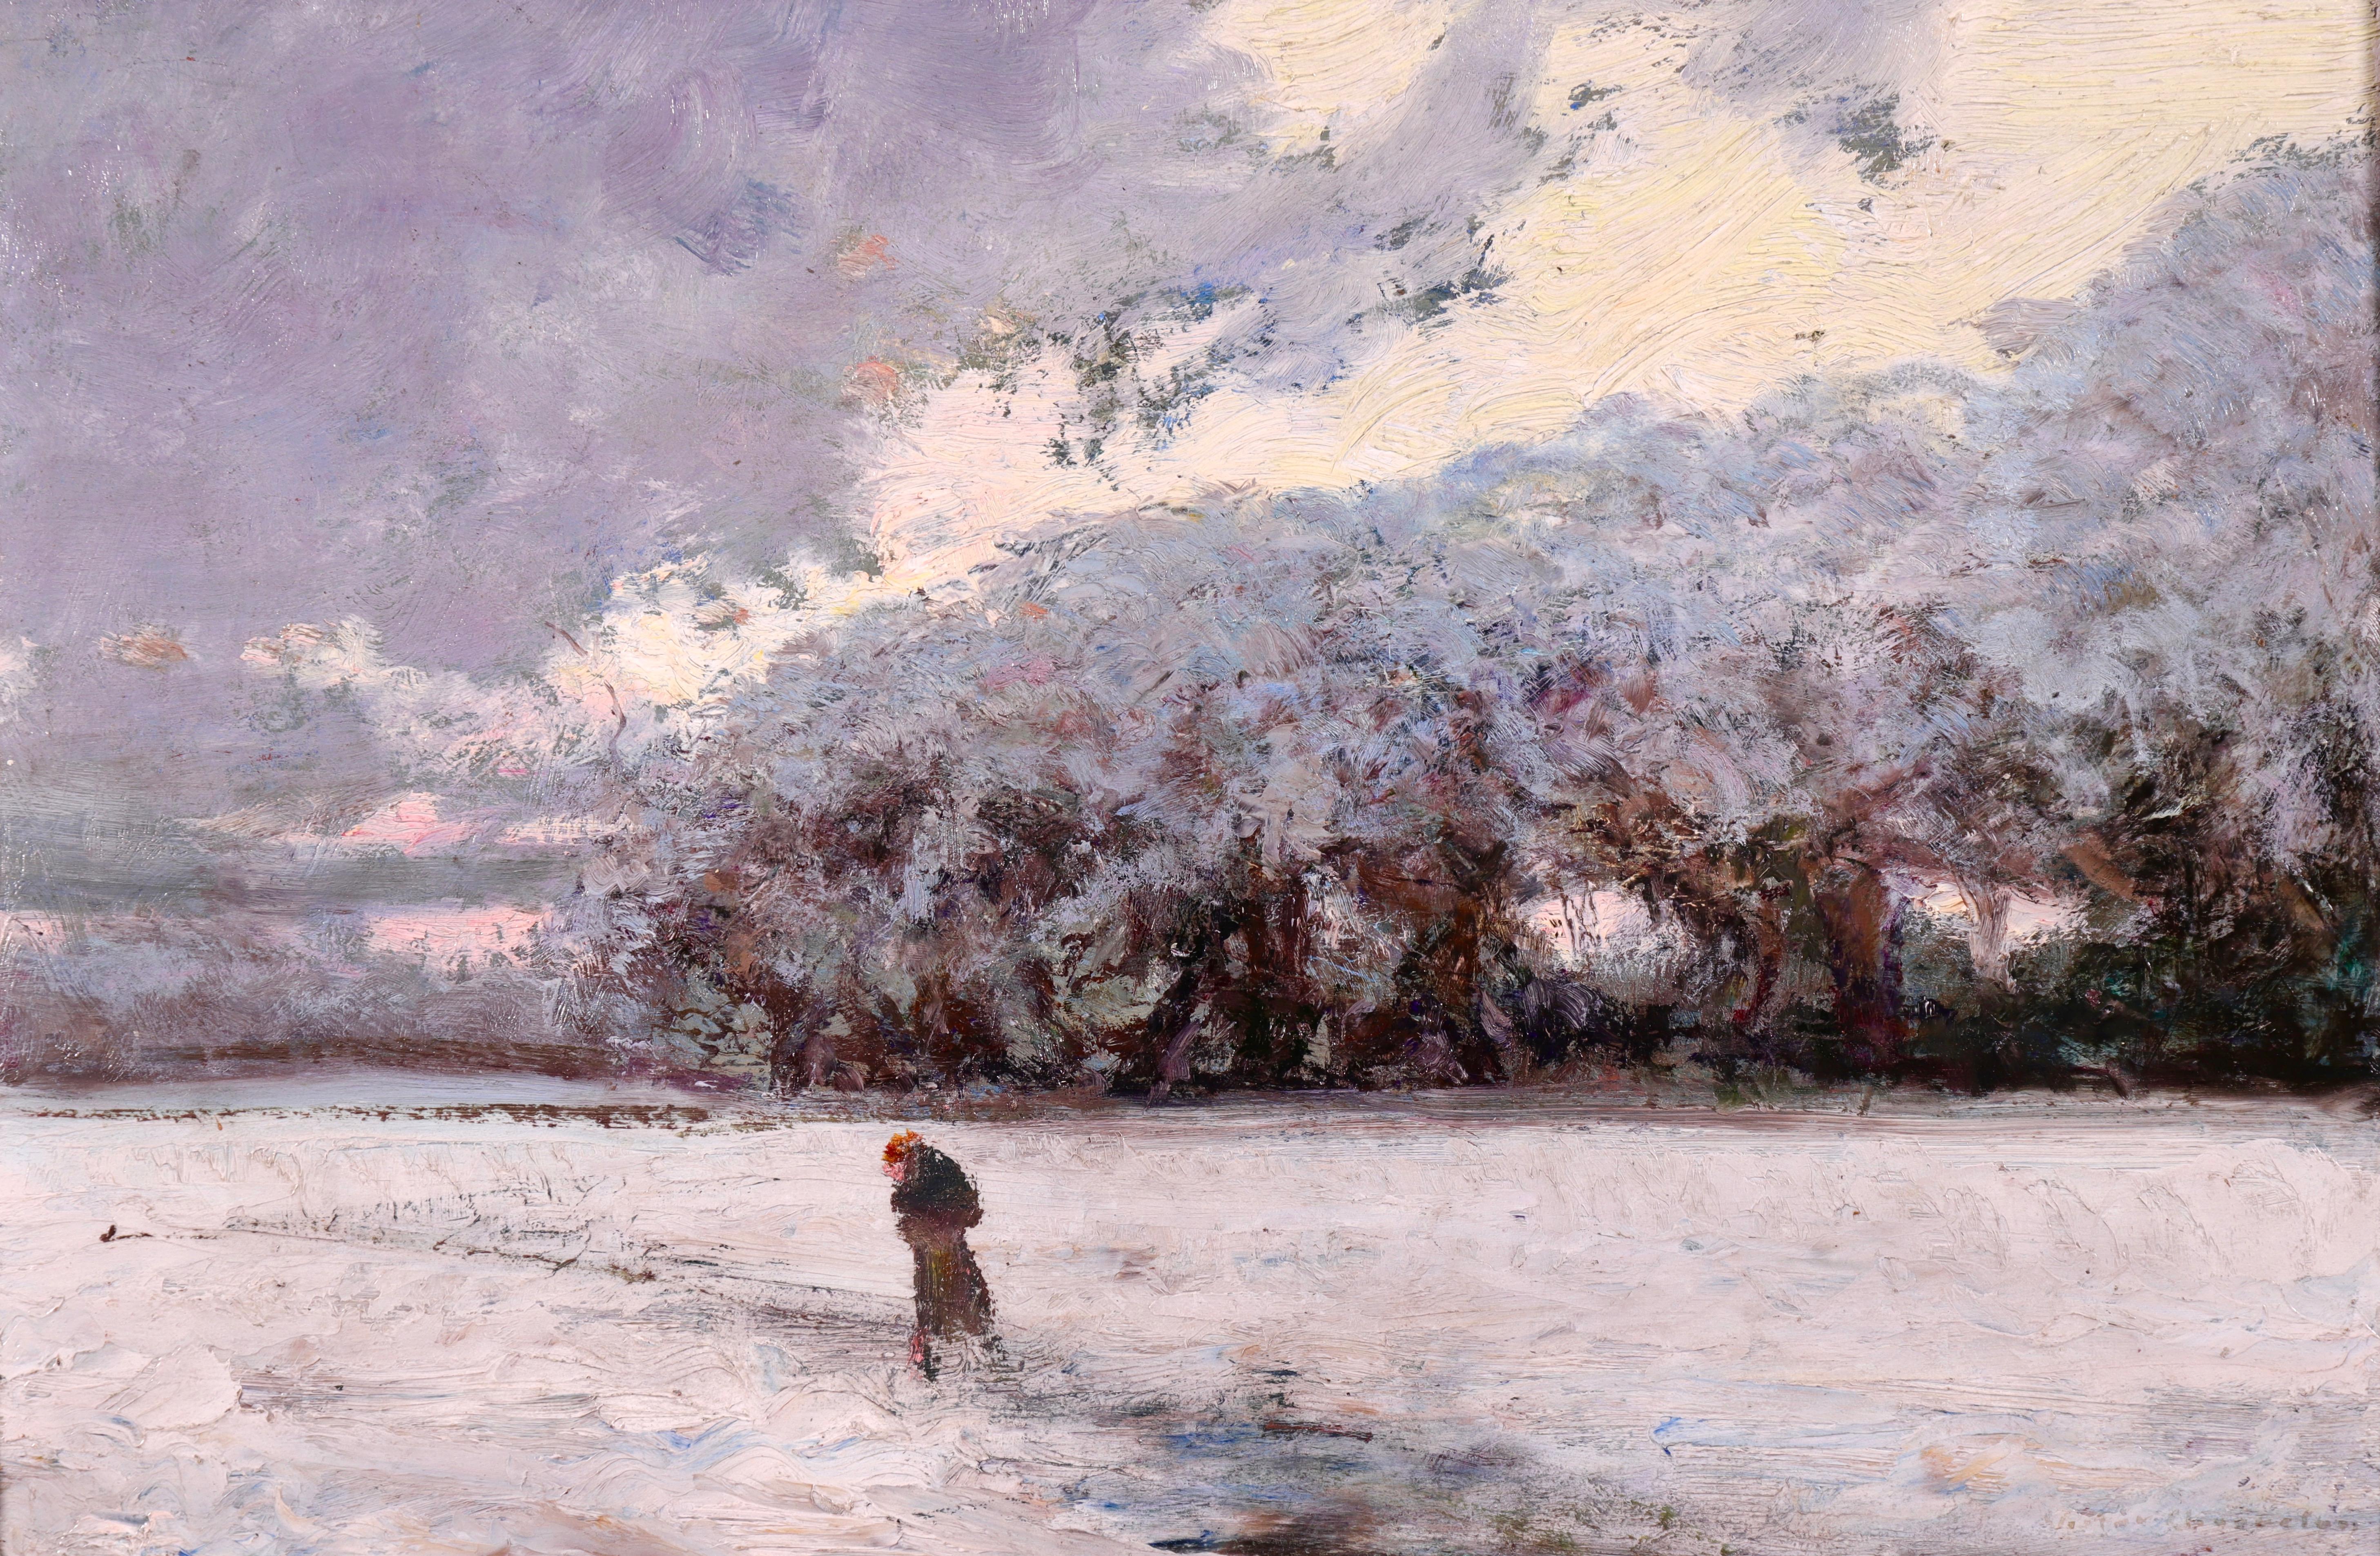 Victor Charreton Landscape Painting - La Neige - Early 20th Century Oil, Figure in Winter Snow Landscape by Charreton